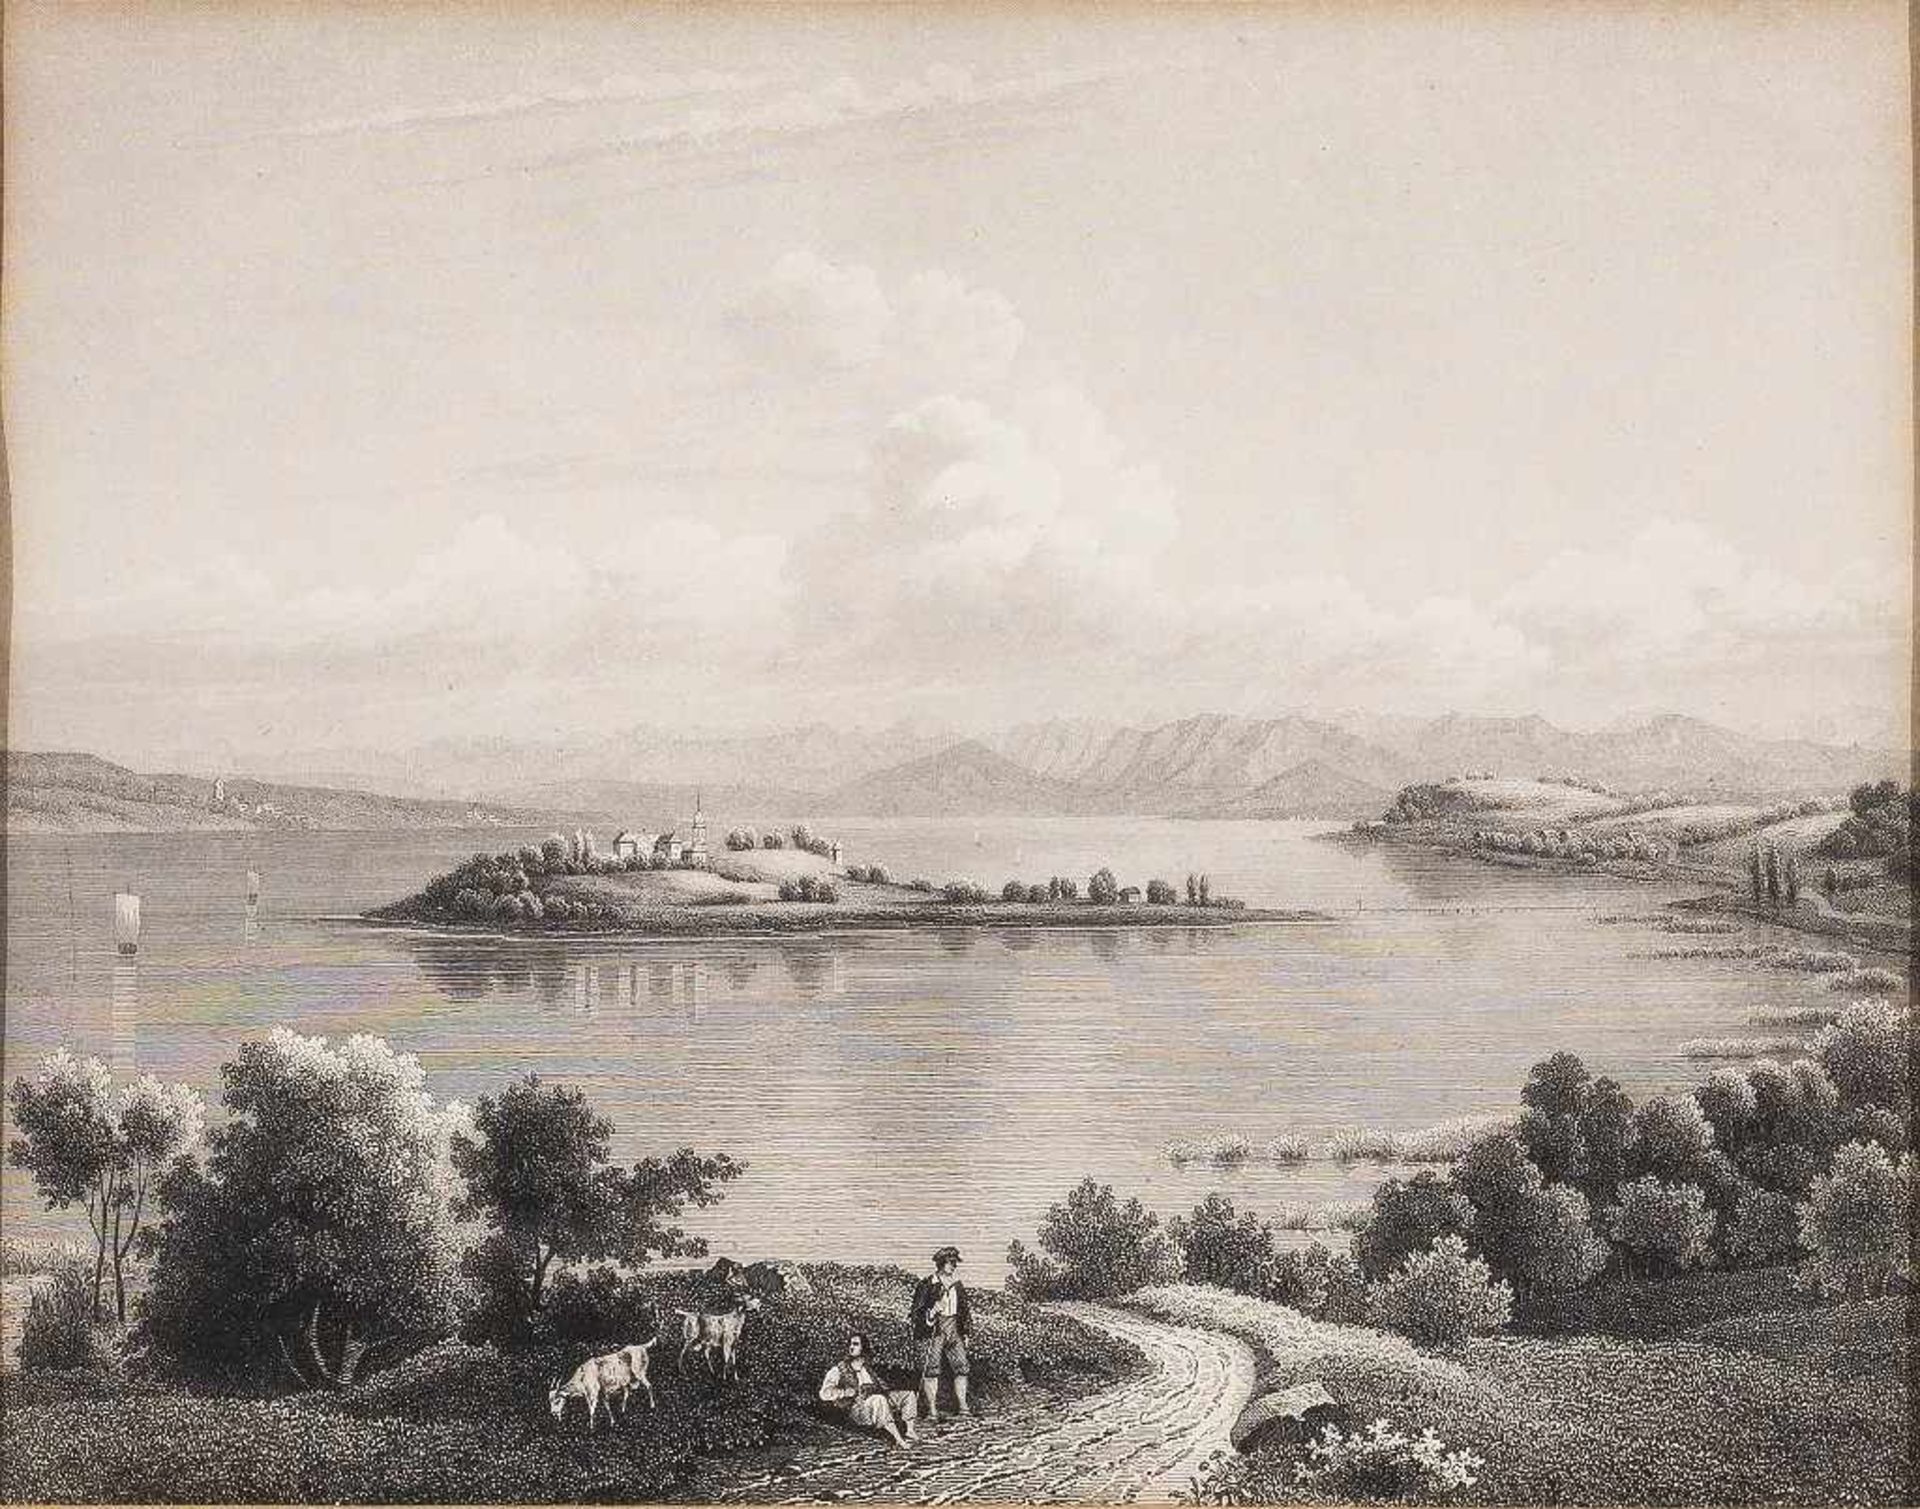 Mainau. Blick vom Bodenseeufer mit Hirten auf die Insel. Stahlstich, 19. Jh. Bildgr. 17,5 x 22 cm.